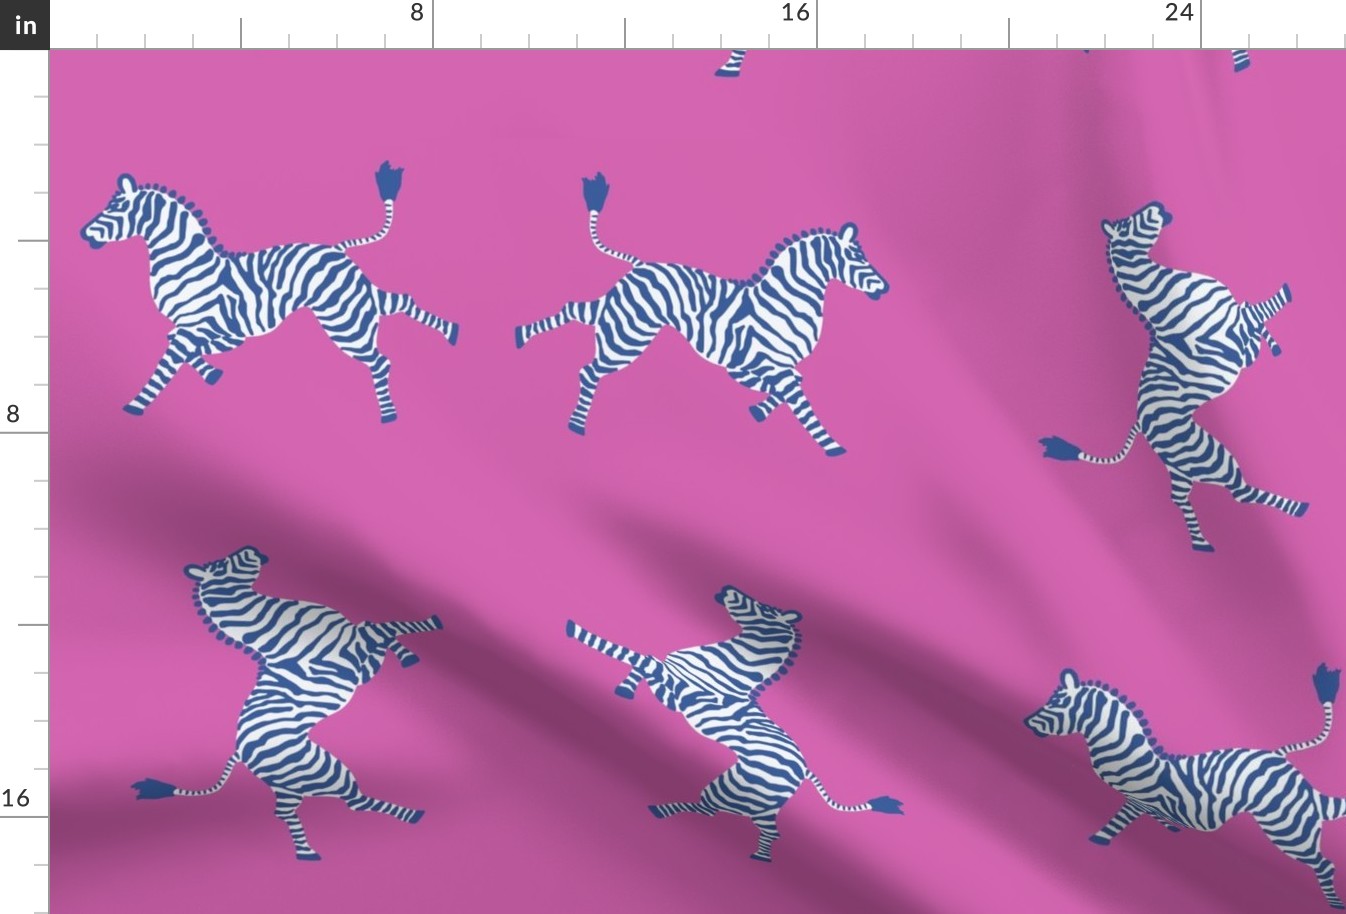 2019 zebra-navy pink